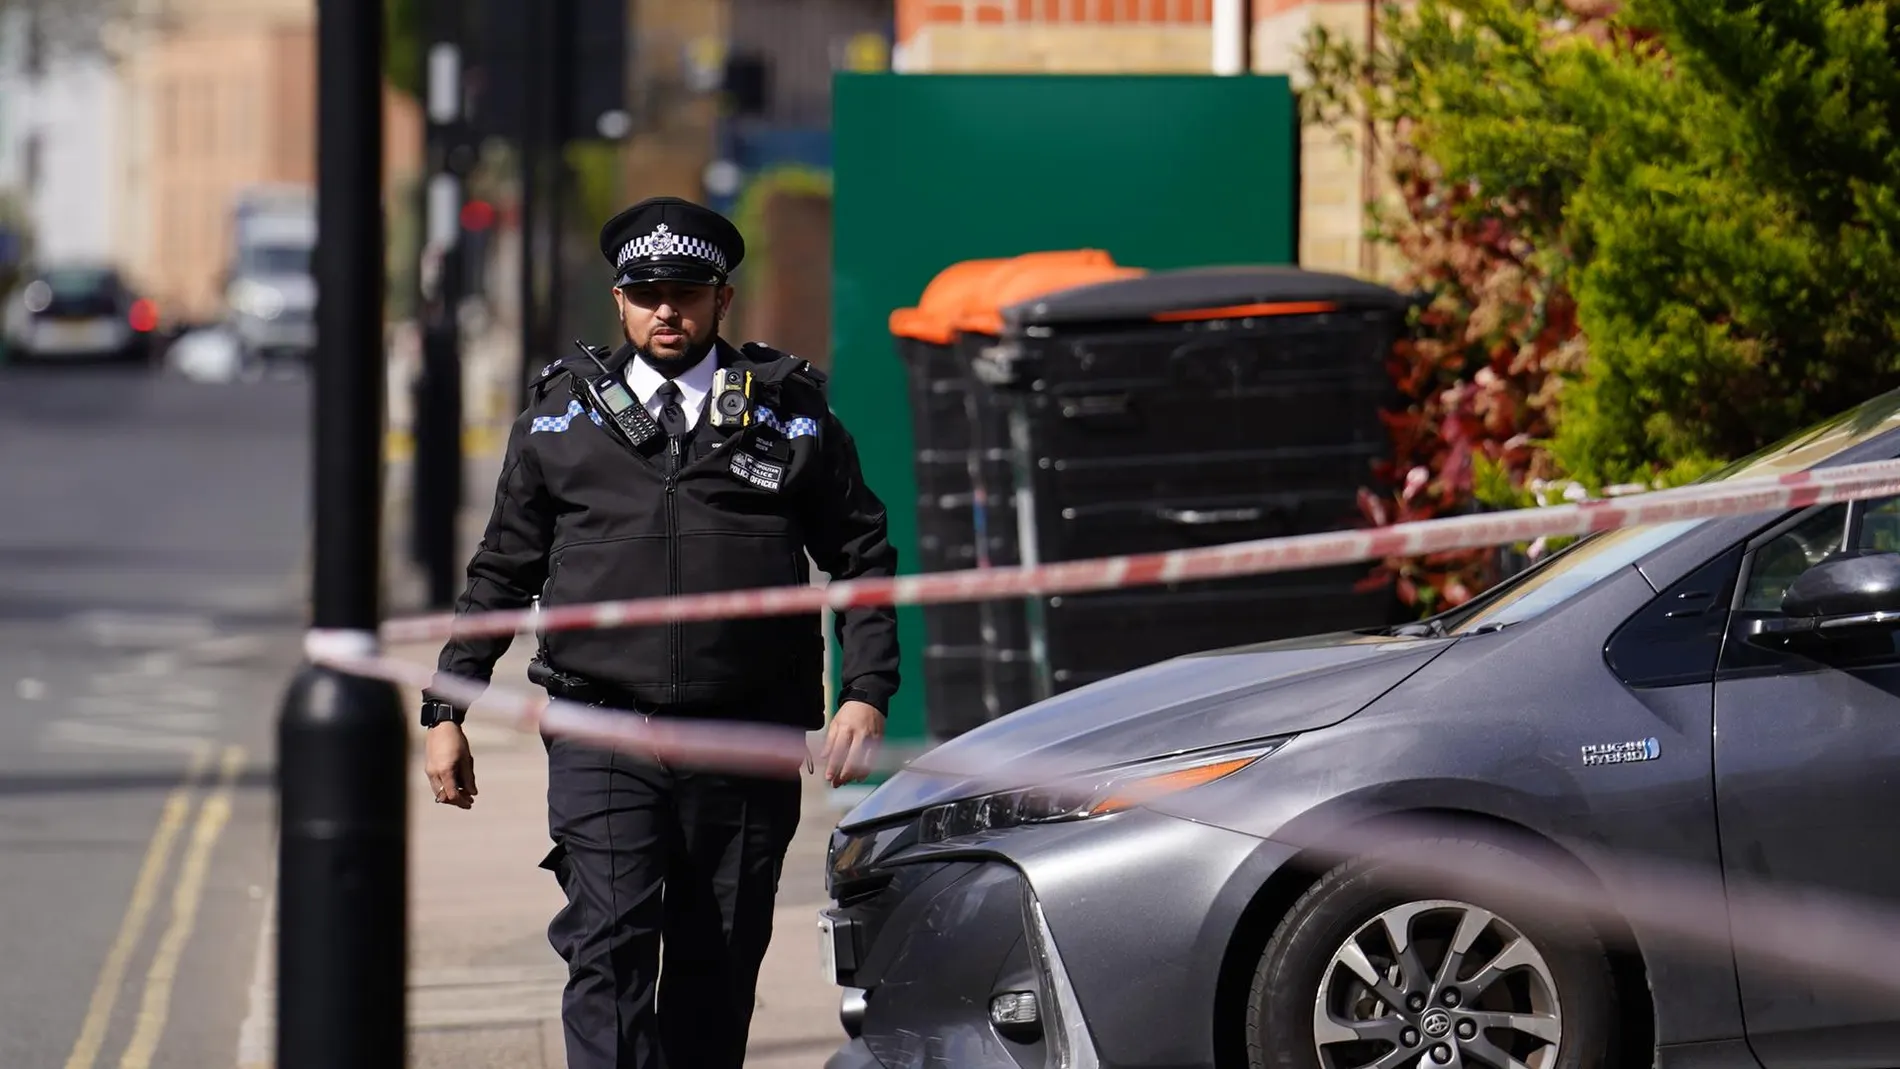 R.Unido.- Acusado de asesinato un hombre con nacionalidad brasileña y española tras un ataque con espada en Londres